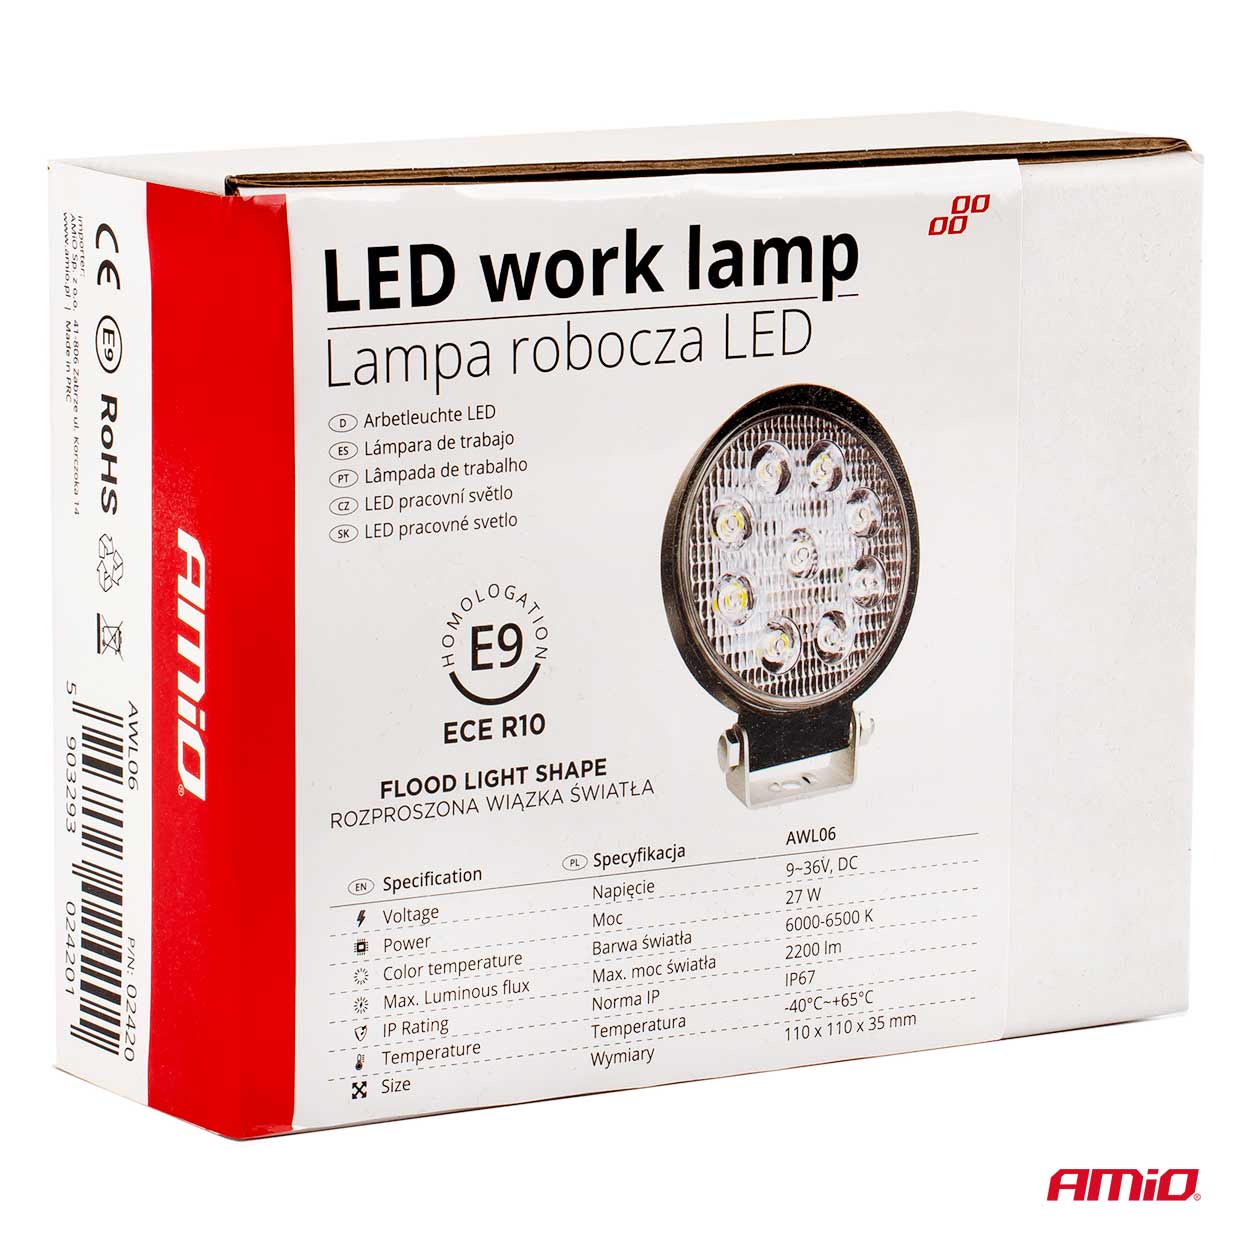 Proiector cu LED din metal rotund 27W, 9/36V, Amio thumb